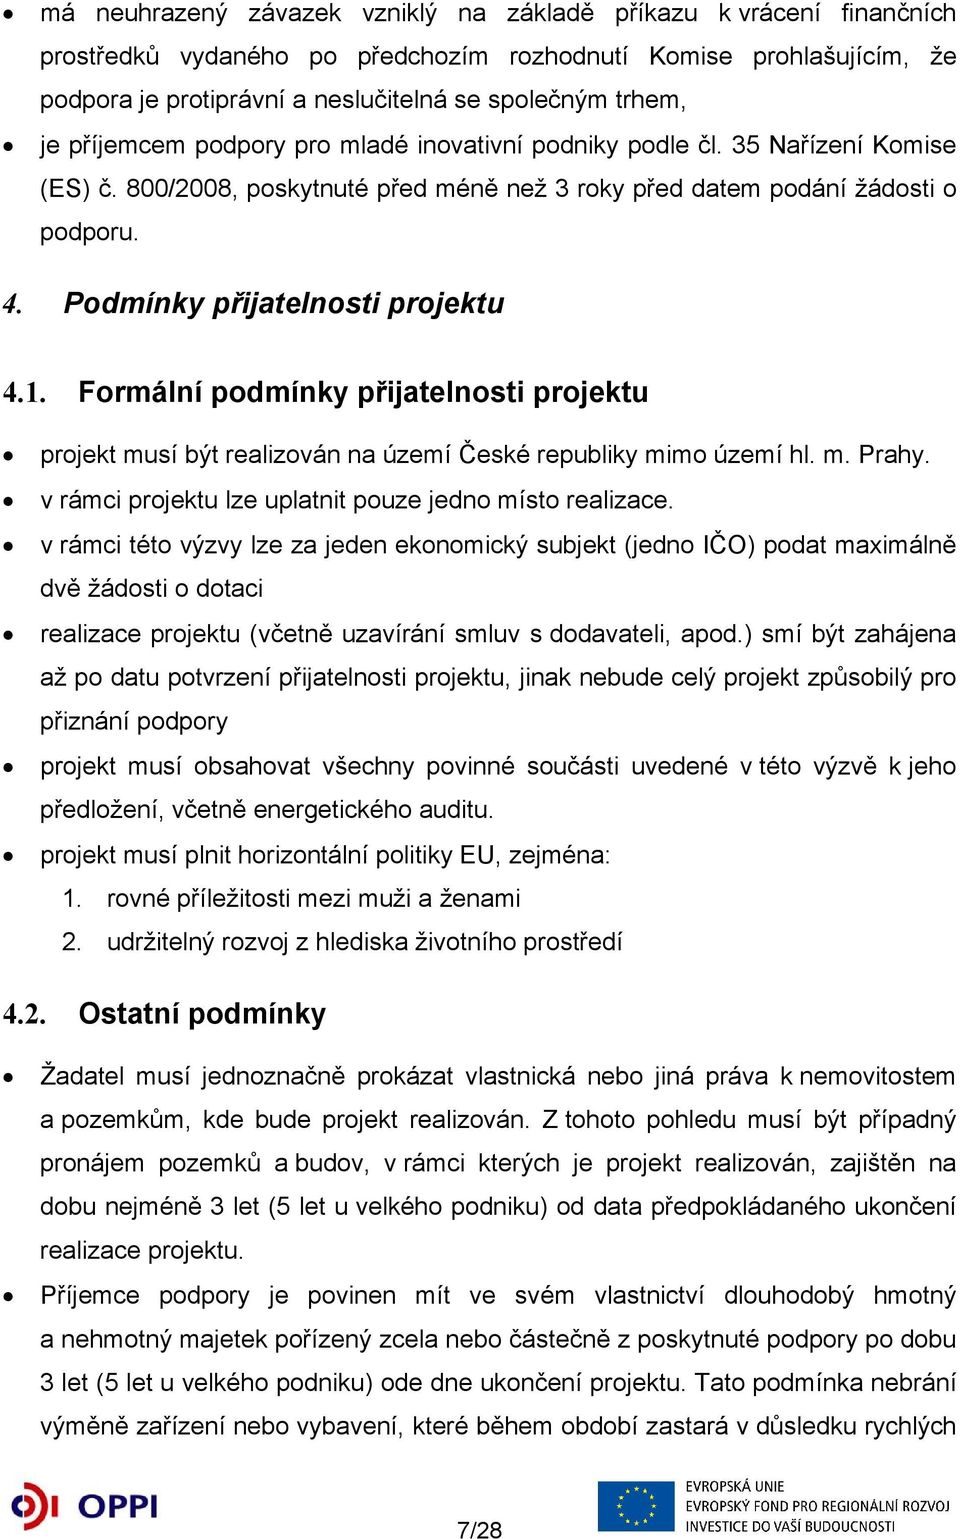 Podmínky přijatelnosti projektu 4.1. Formální podmínky přijatelnosti projektu projekt musí být realizován na území České republiky mimo území hl. m. Prahy.